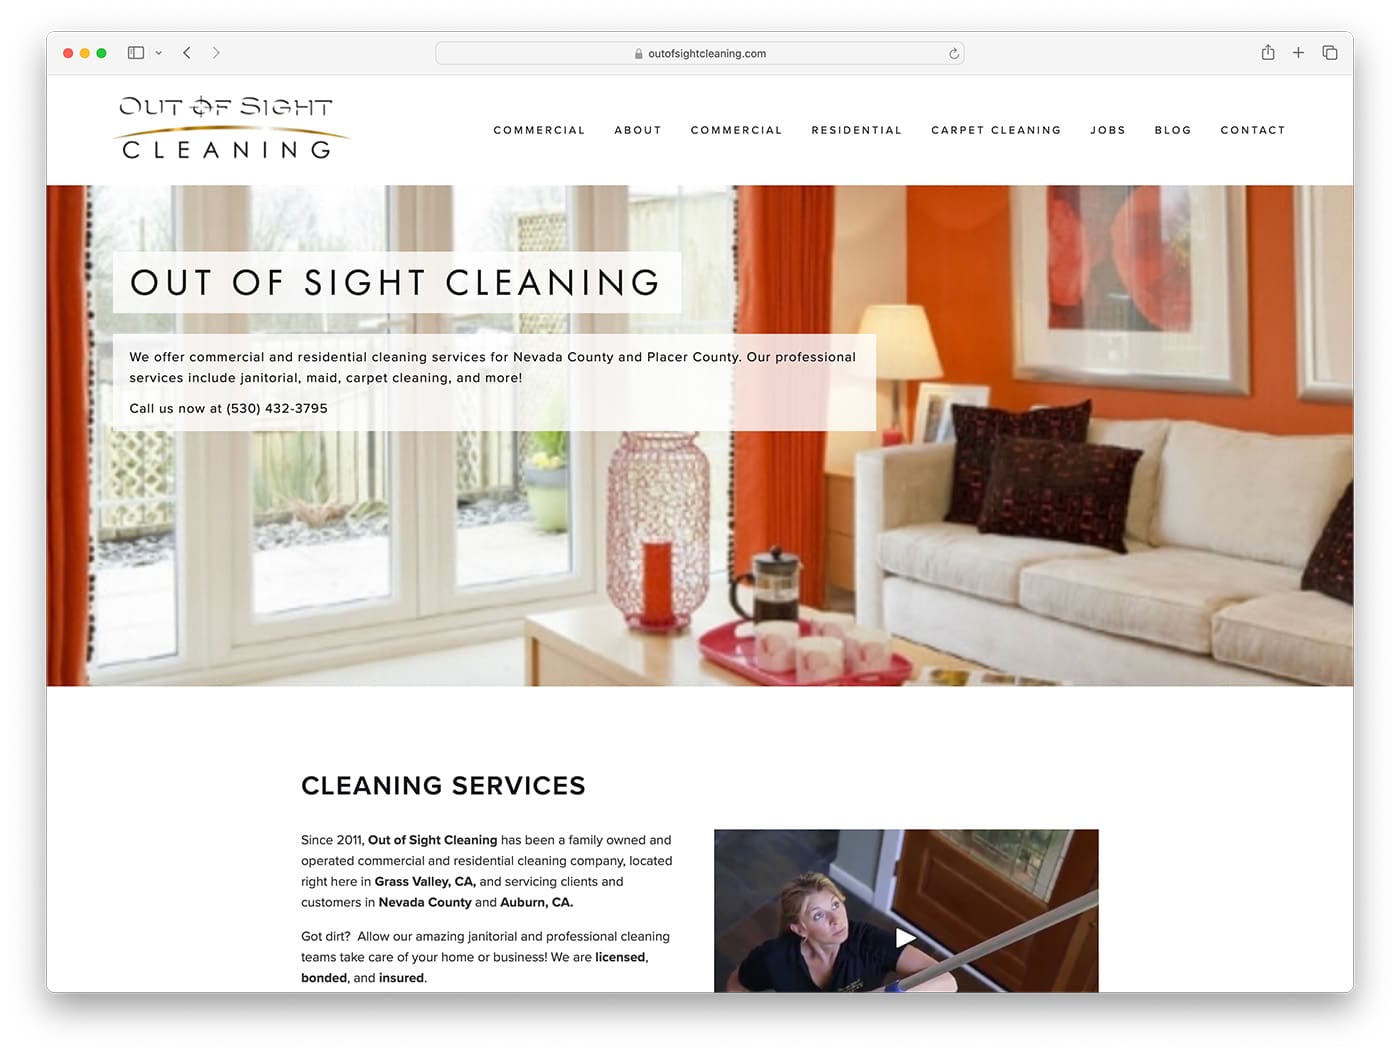 Sitio web de la empresa de limpieza Out of Sight